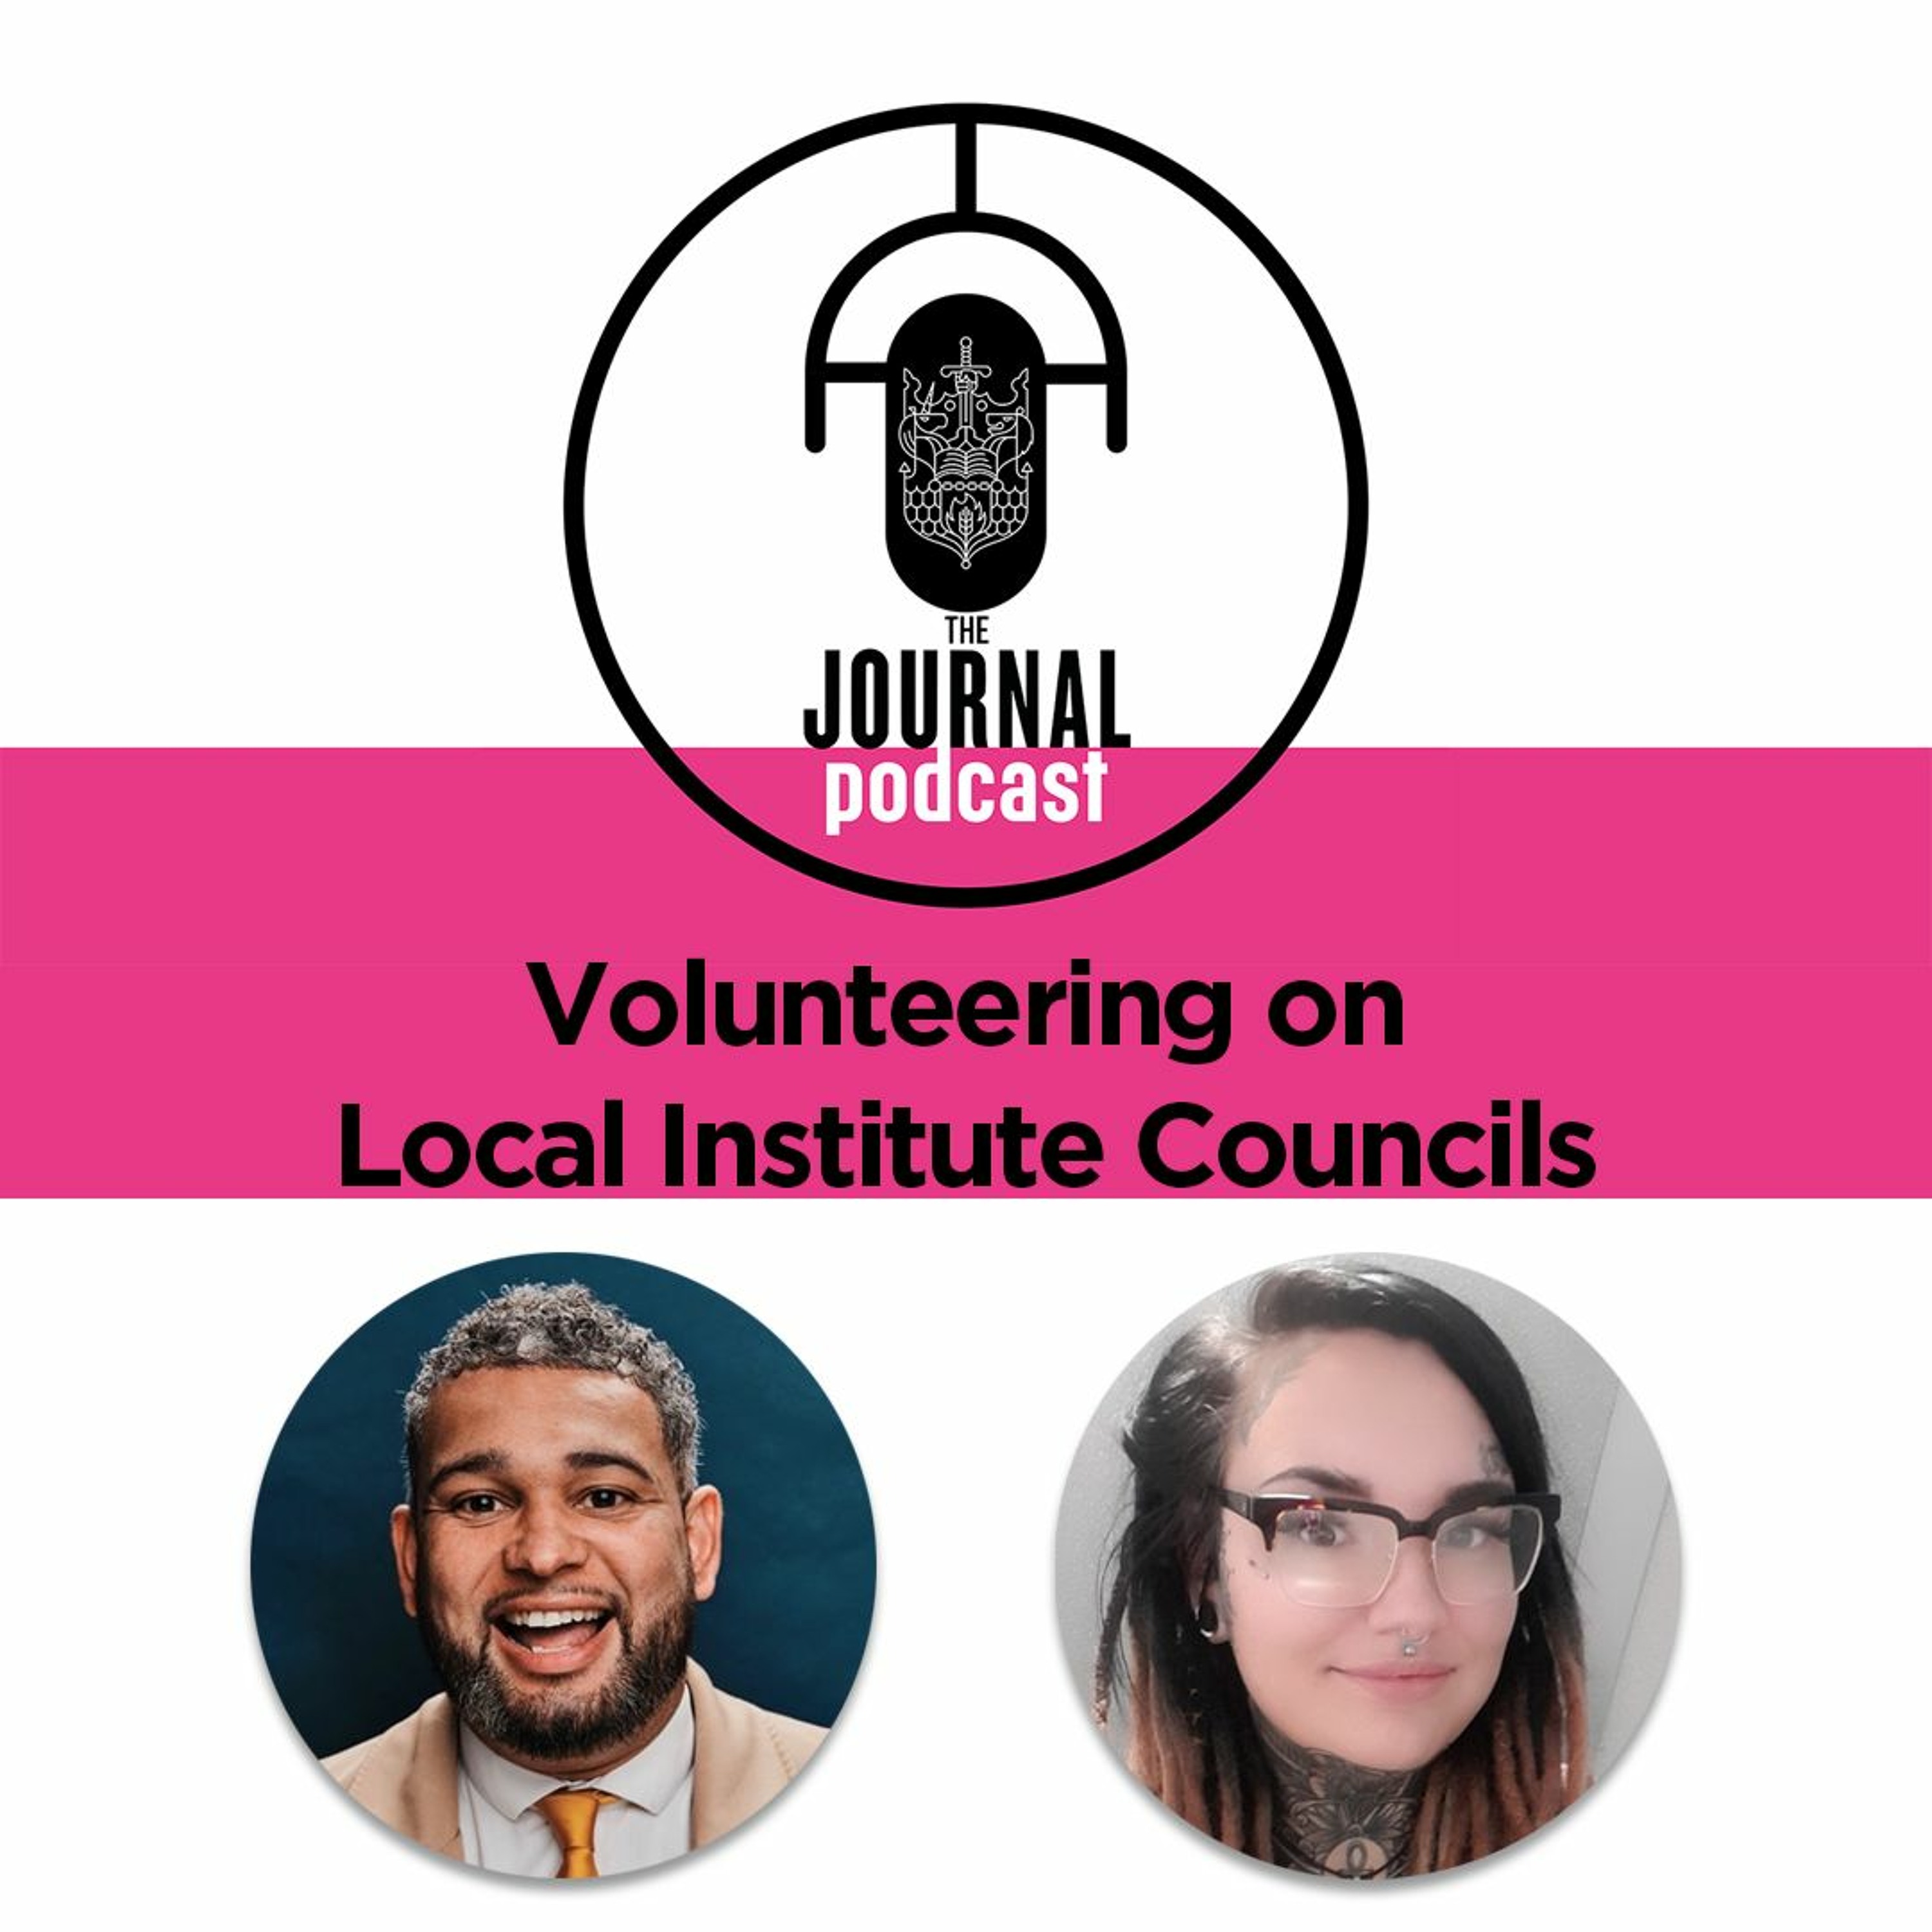 Volunteering on Local Institute Councils